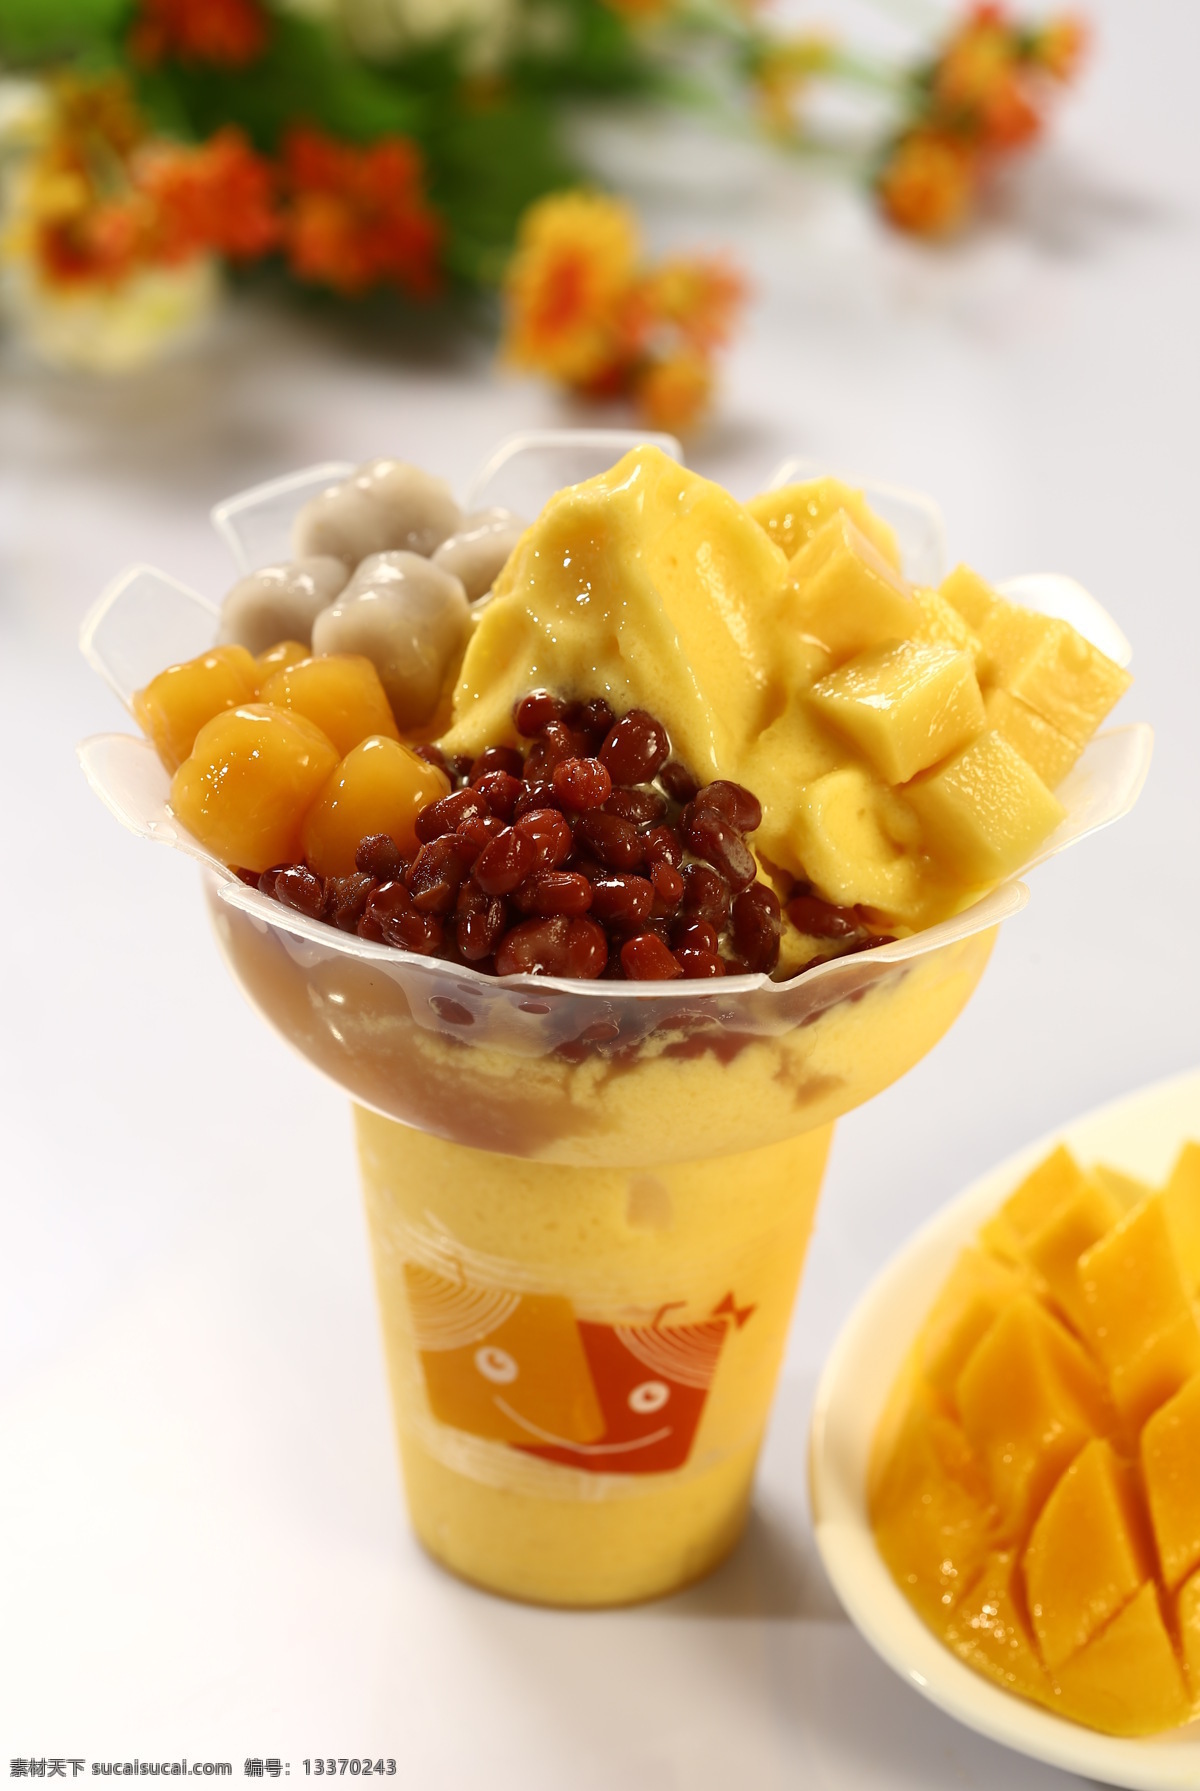 芒果冰沙 芒果冰激凌 奶茶 甜品 水果冰沙 餐饮美食 传统美食